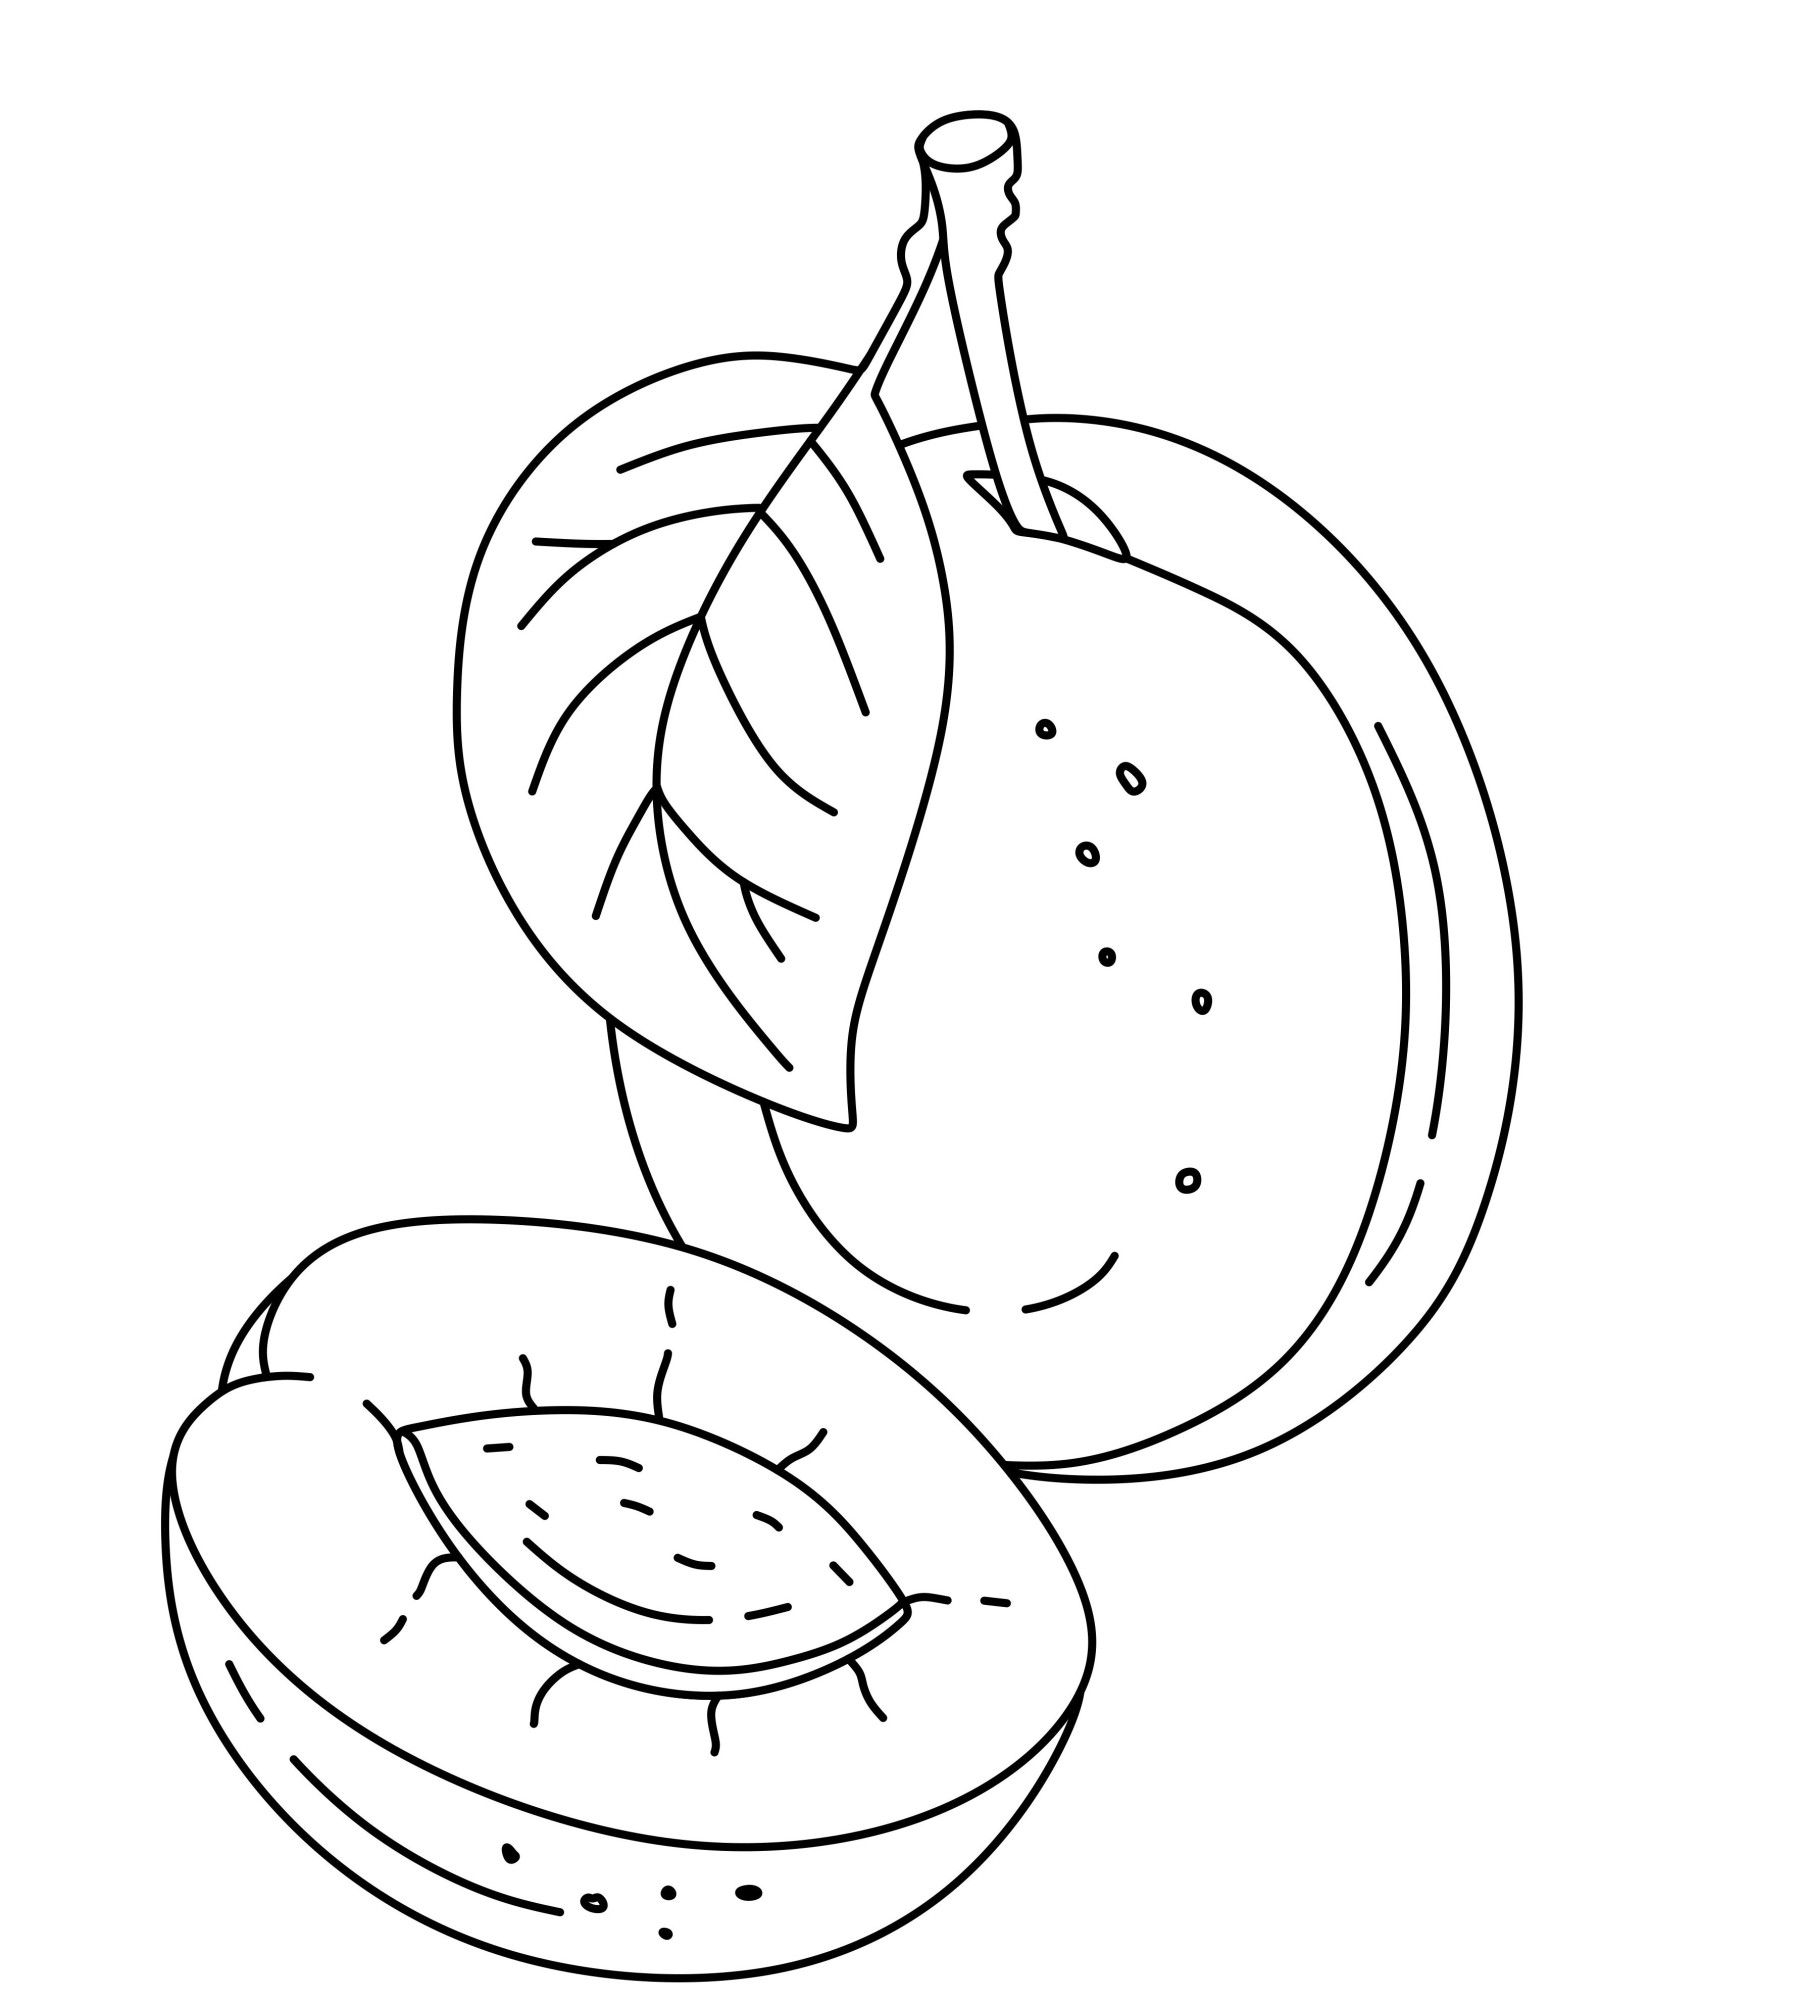 Раскраска для детей: сладкий фрукт слива и половинка с косточкой